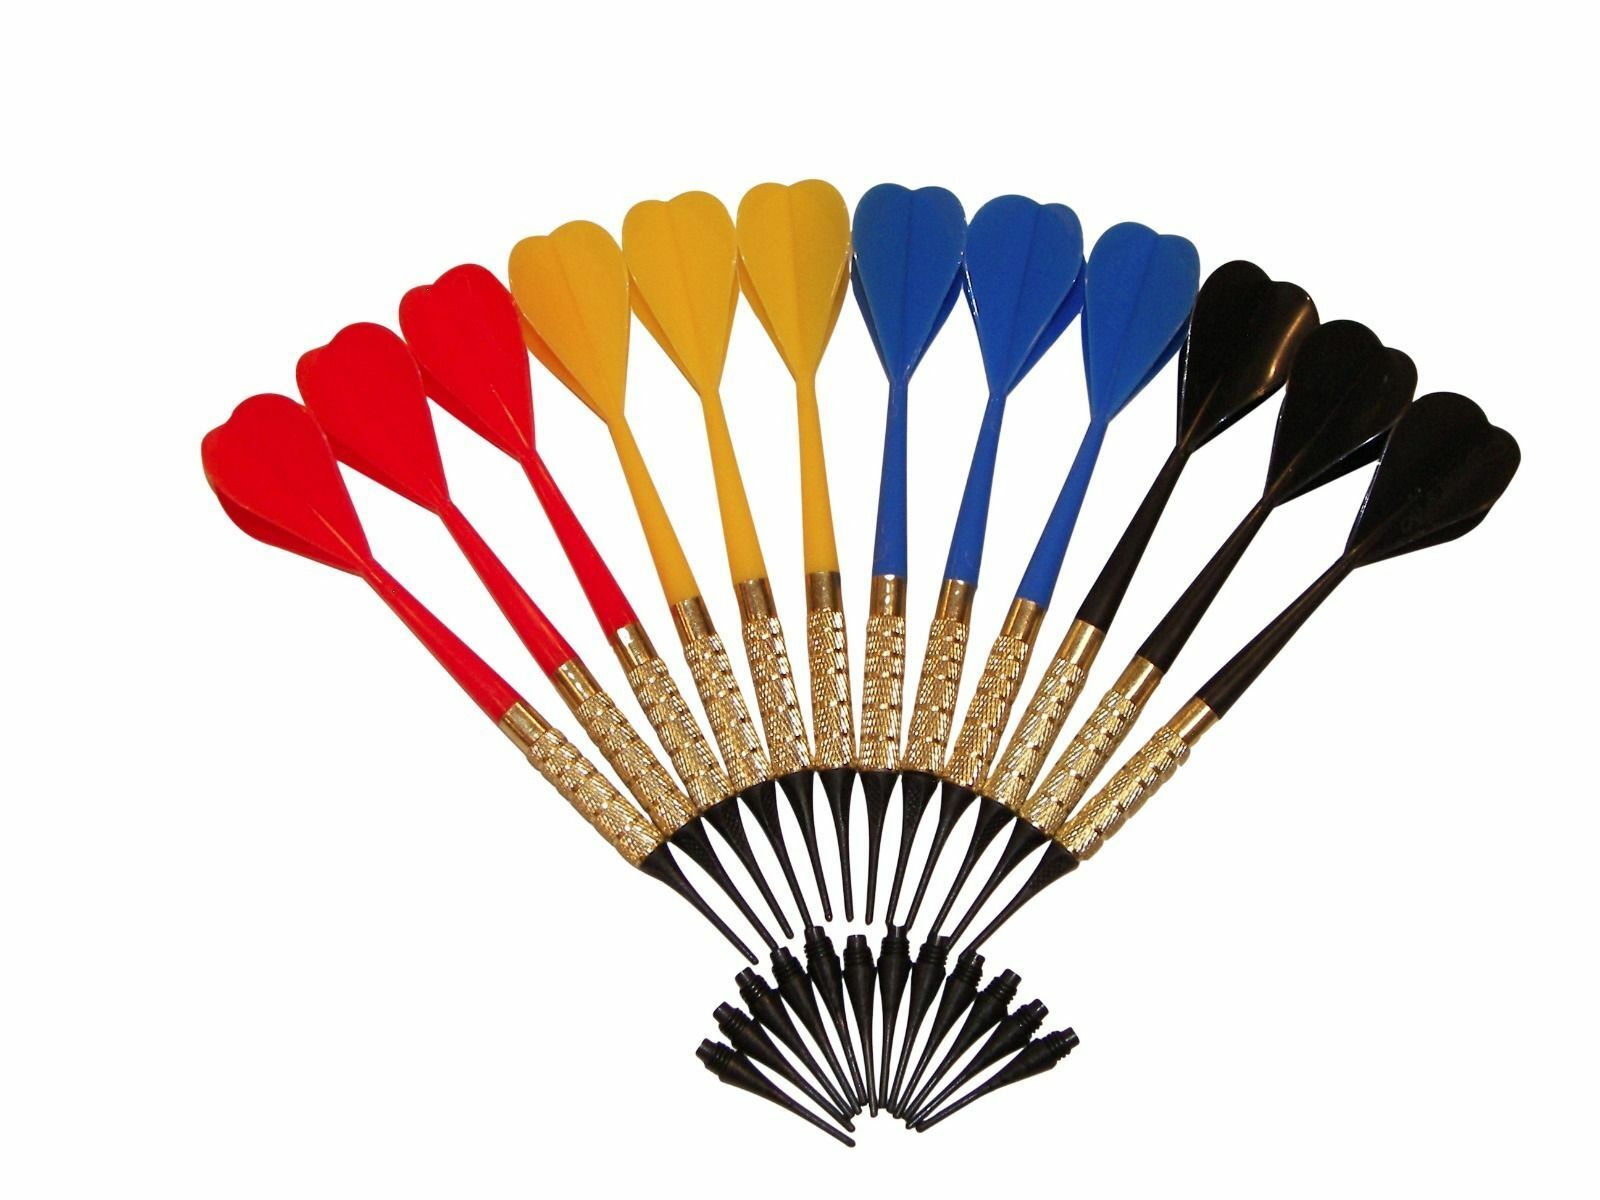 12 Dart Pro Plastic Soft Tip Darts Assorted Colors Pub Bar Darts + 50 Extra Tips